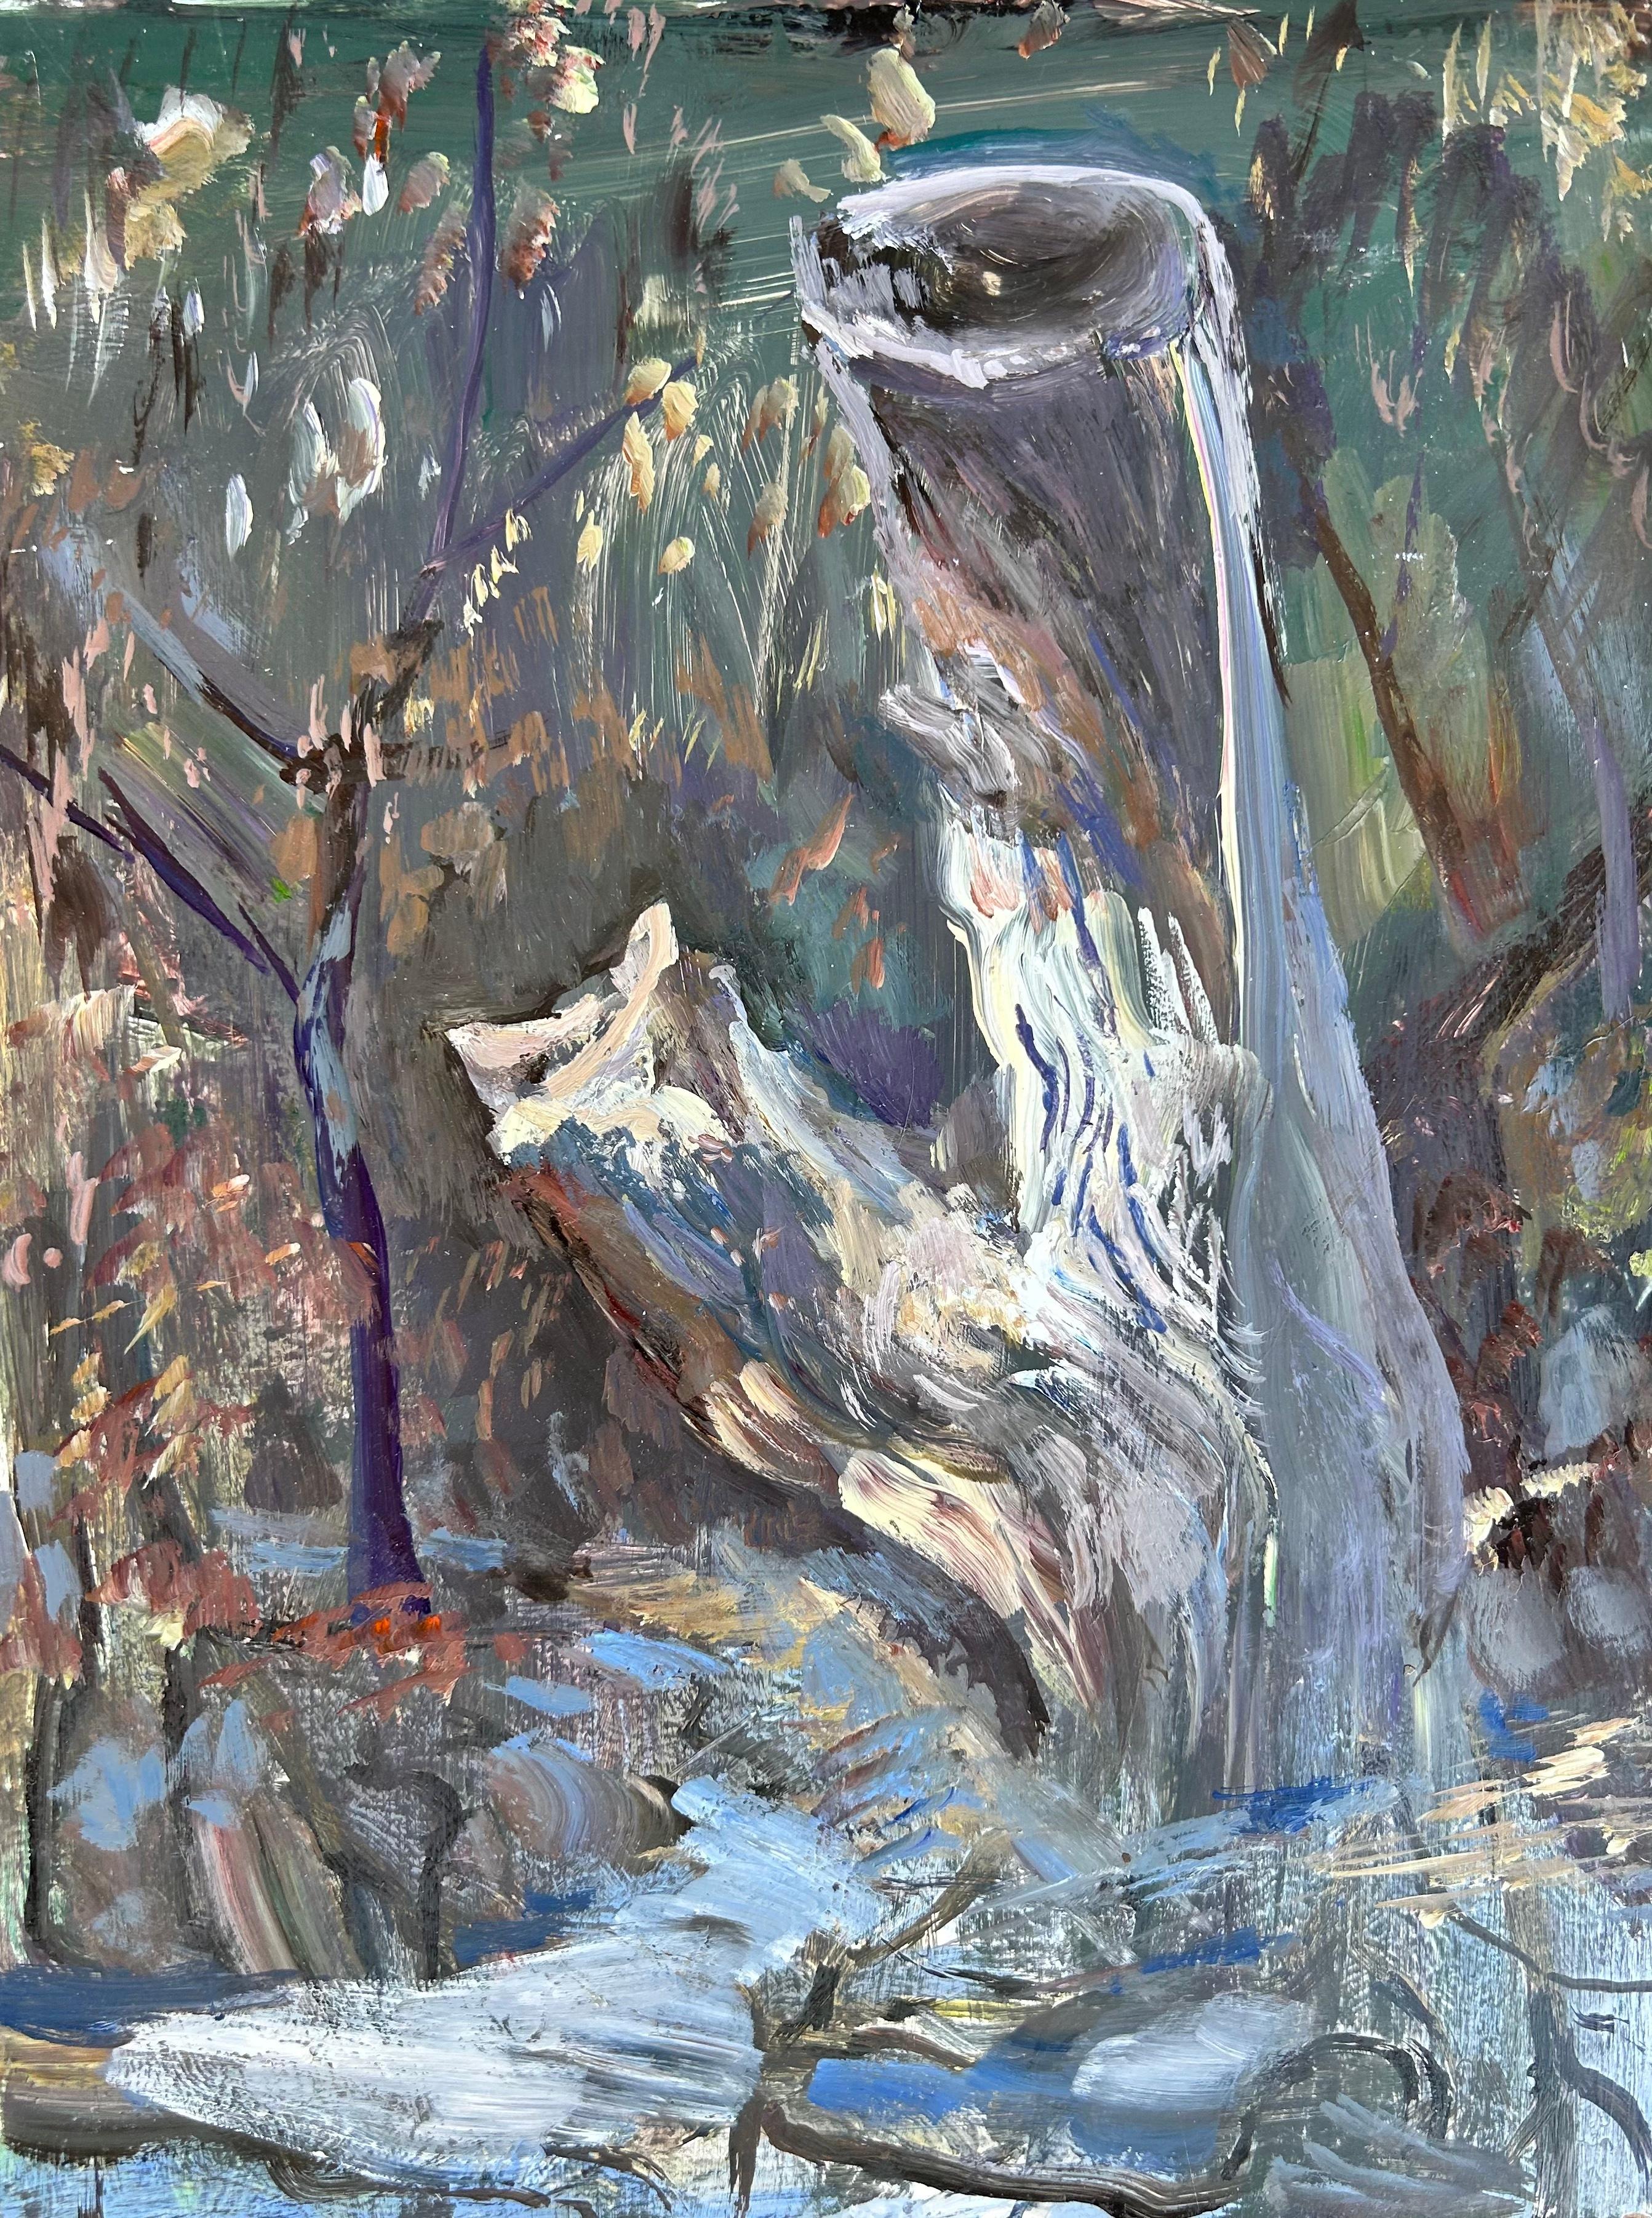 John Defeo Landscape Painting - The Lovely Stump